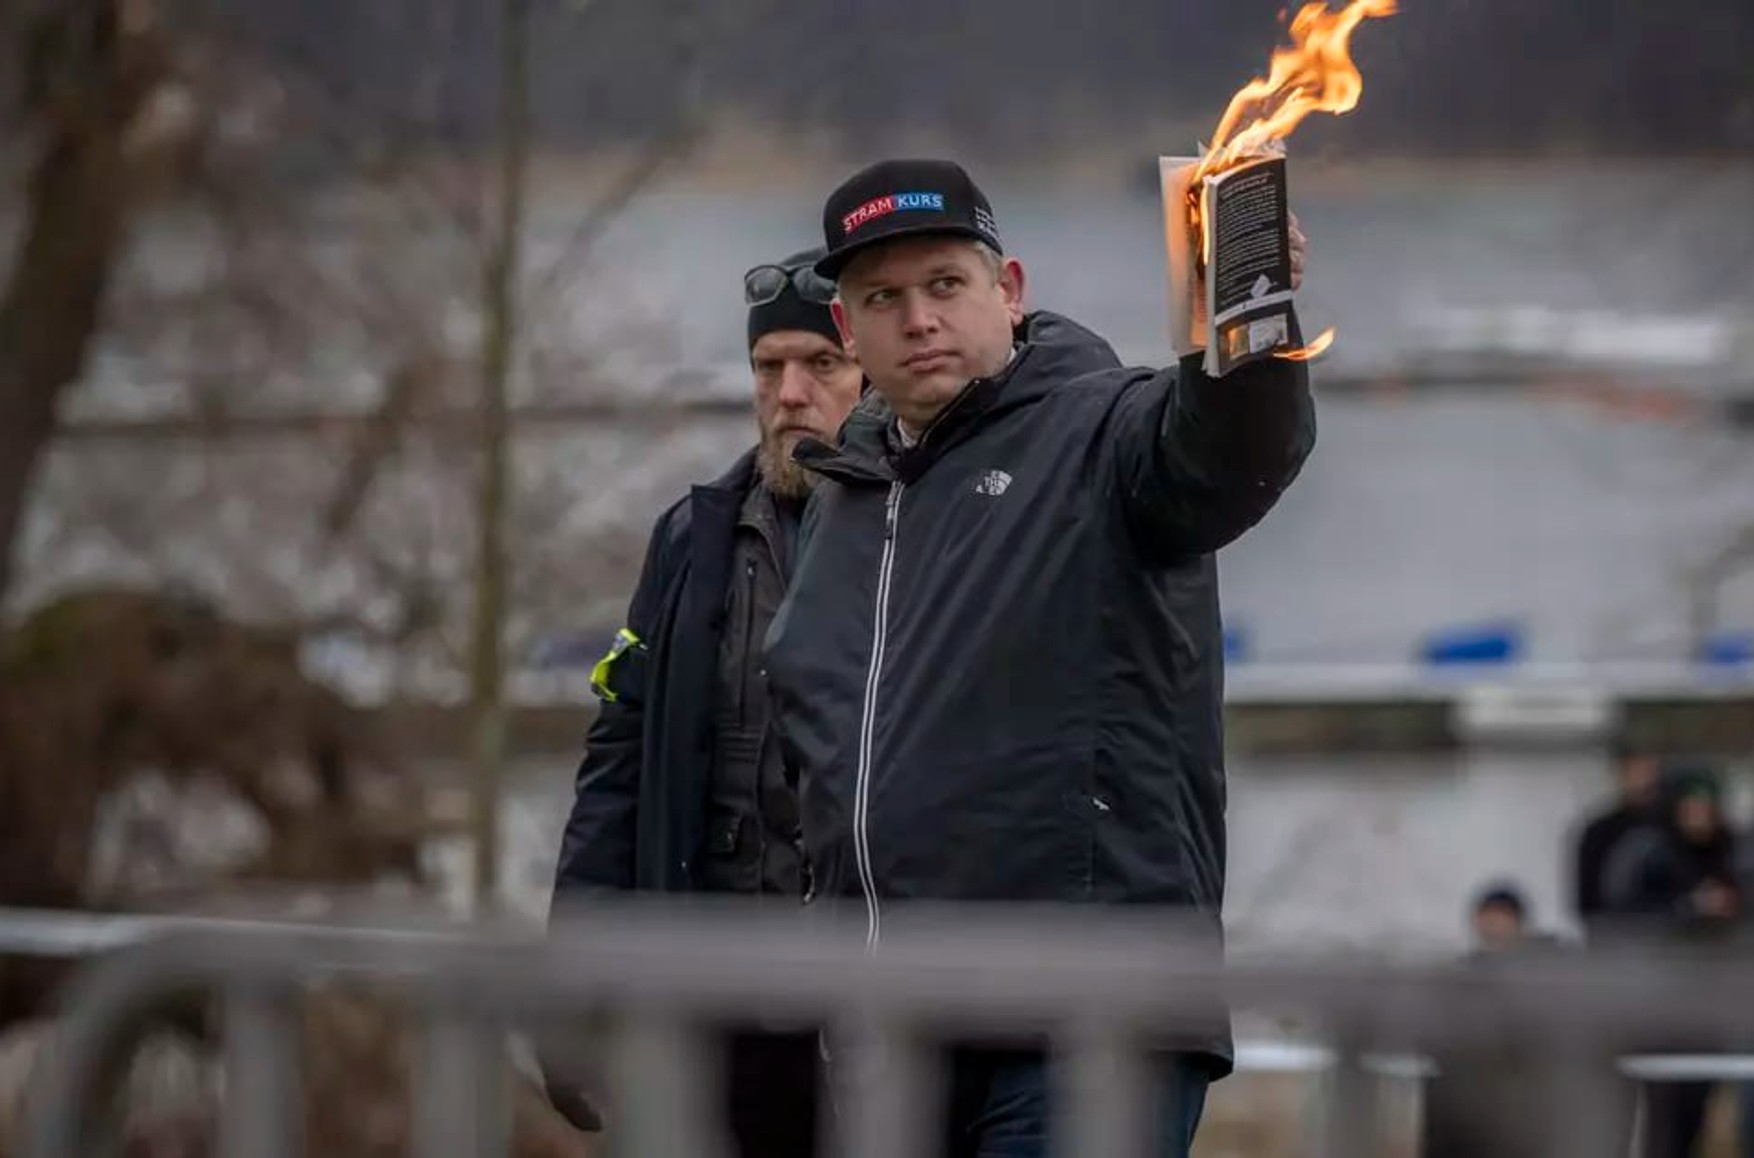 Акцию с сожжением Корана в Стокгольме оплатил журналист Чанг Фрик. Раньше он работал на RT, но заявляет, что с 2014 года не связан с каналом